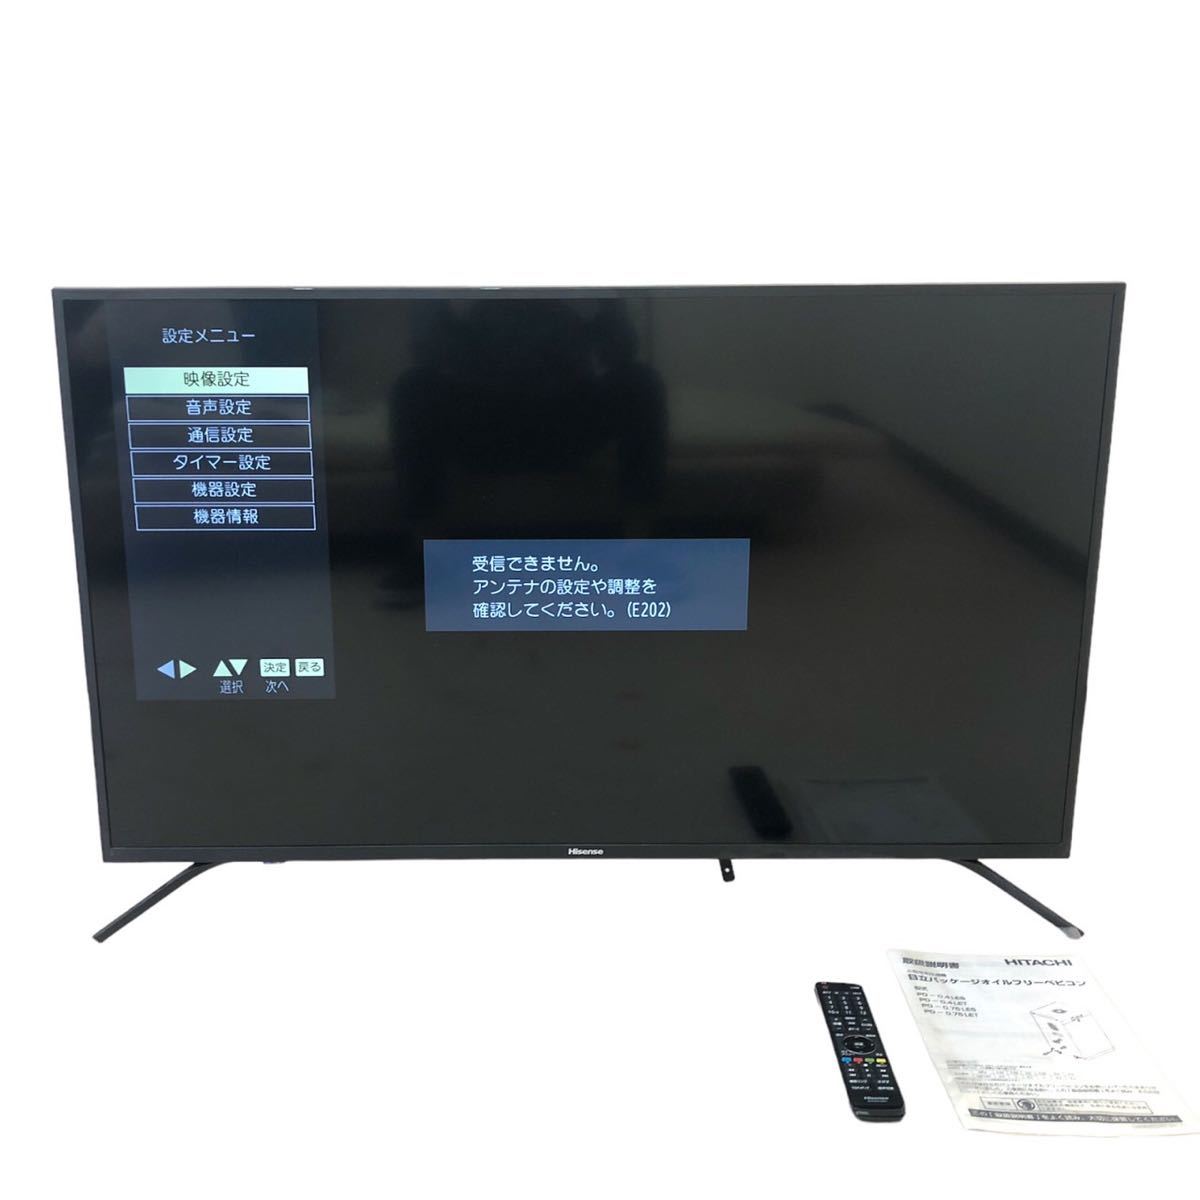 ハイセンス 50v型 フルハイビジョン液晶テレビ 50F68E 50インチ ネット